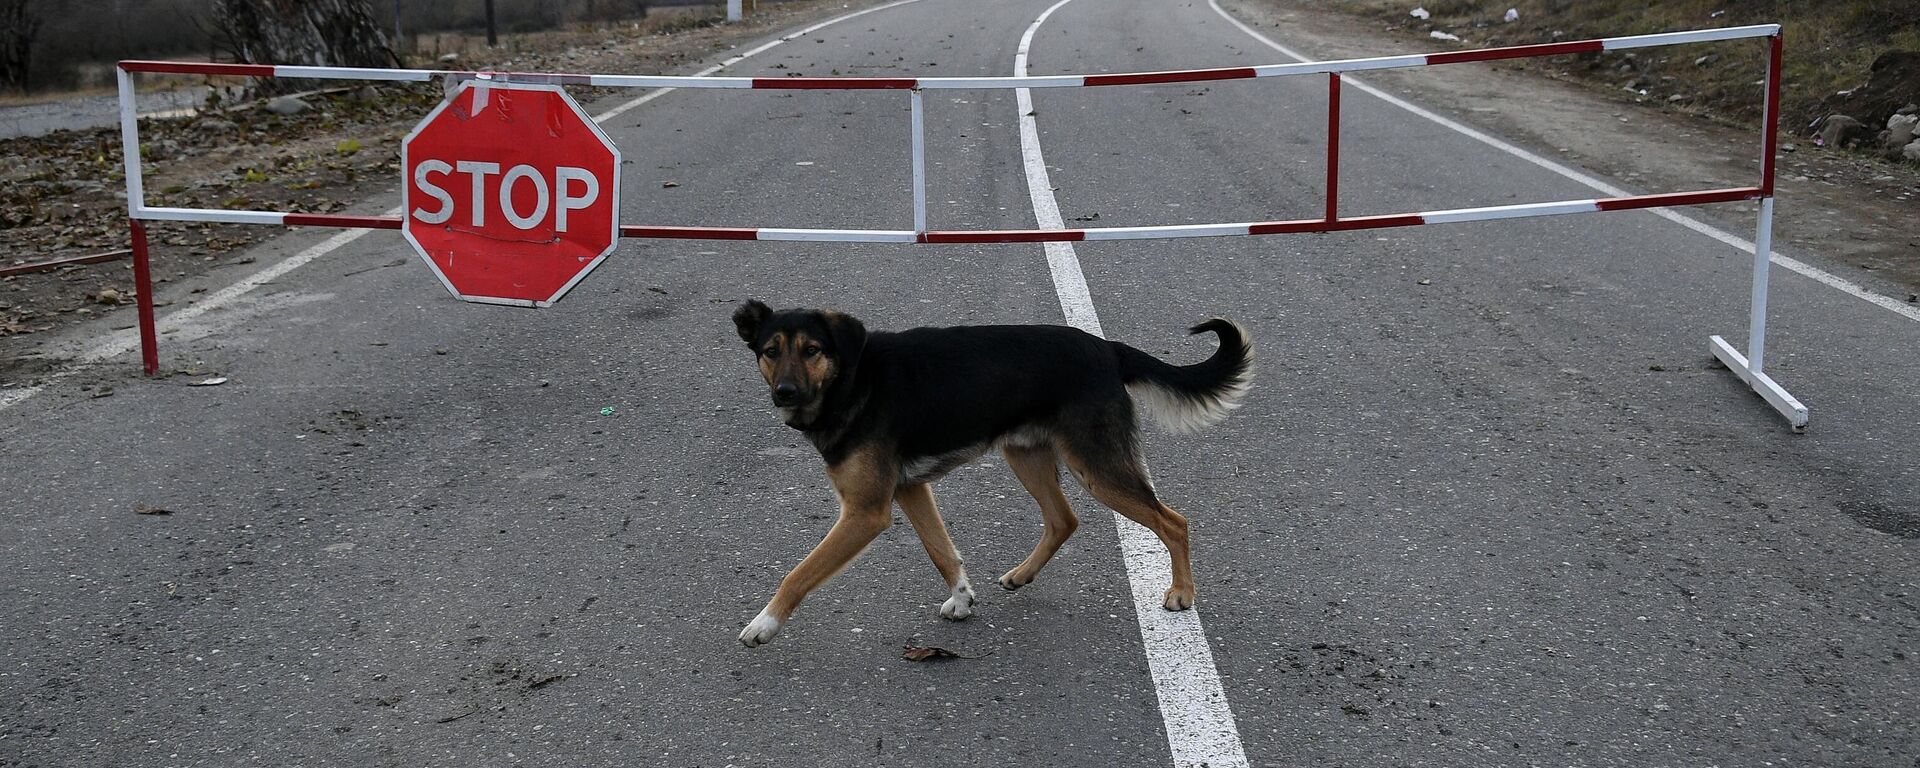 Собака на автомобильной дороге, закрытой на границе для проезда автомобилей. - Sputnik Таджикистан, 1920, 31.05.2021